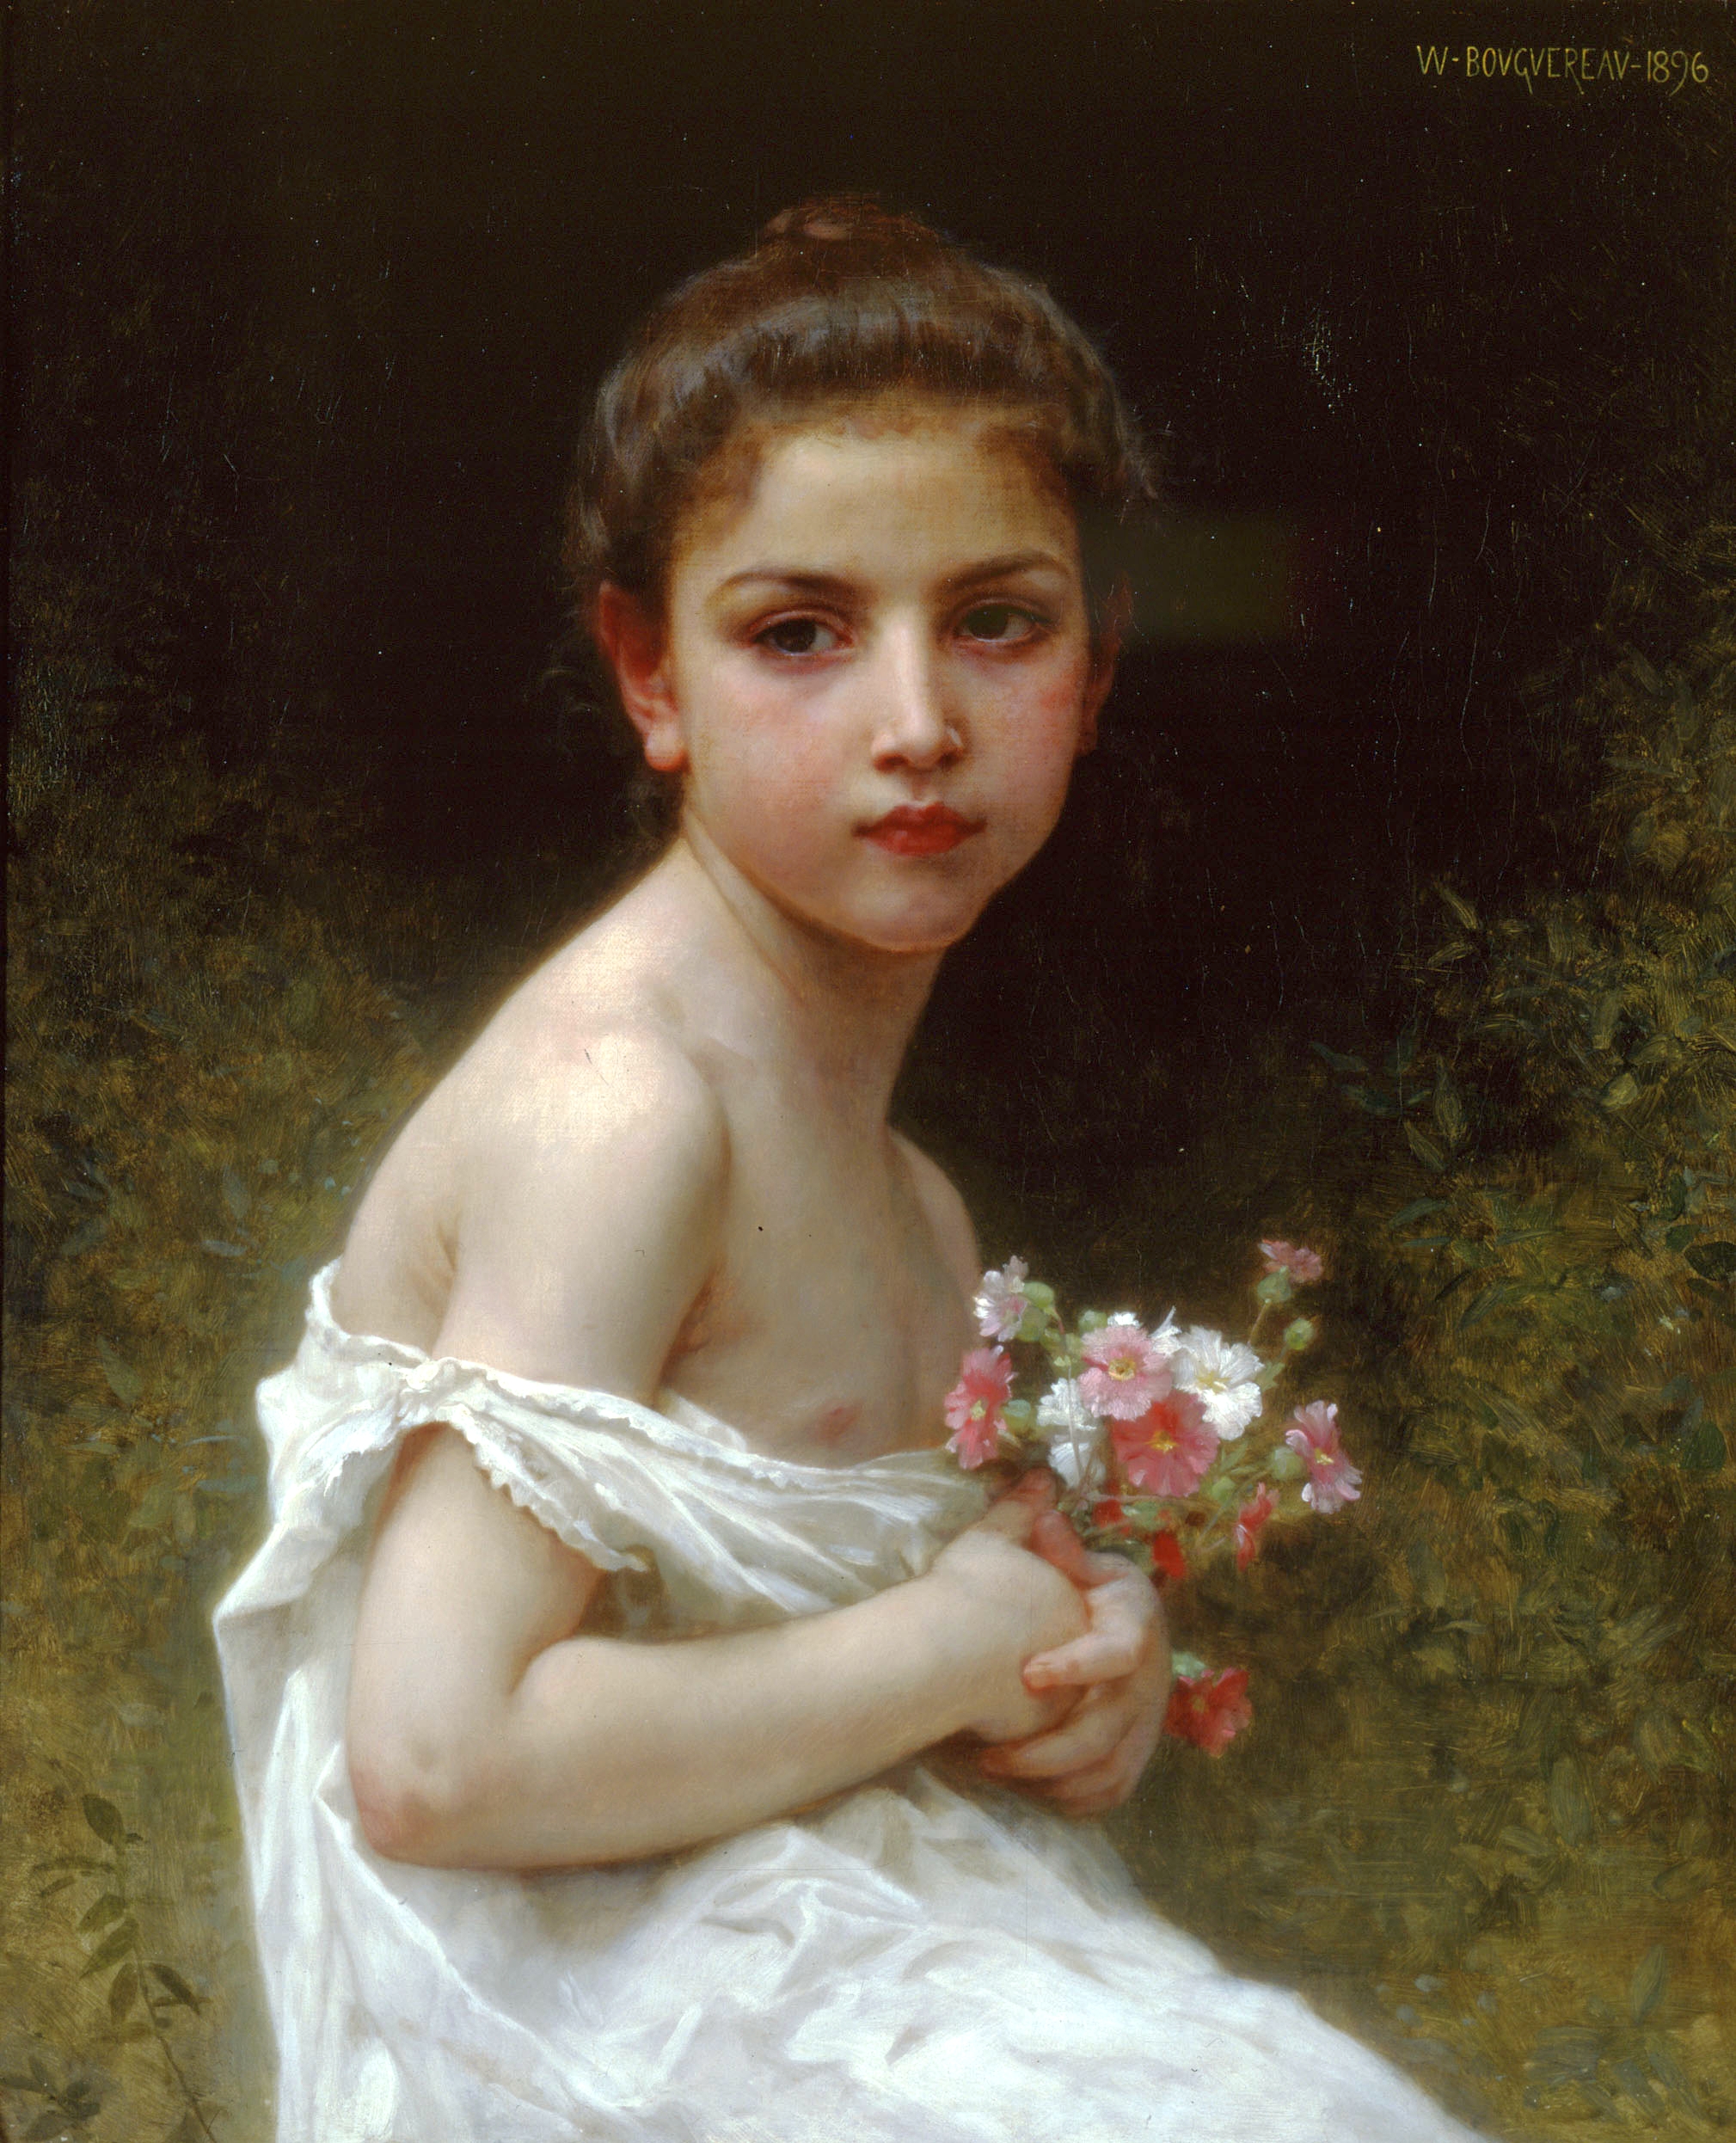 Girl bouquet (1896).